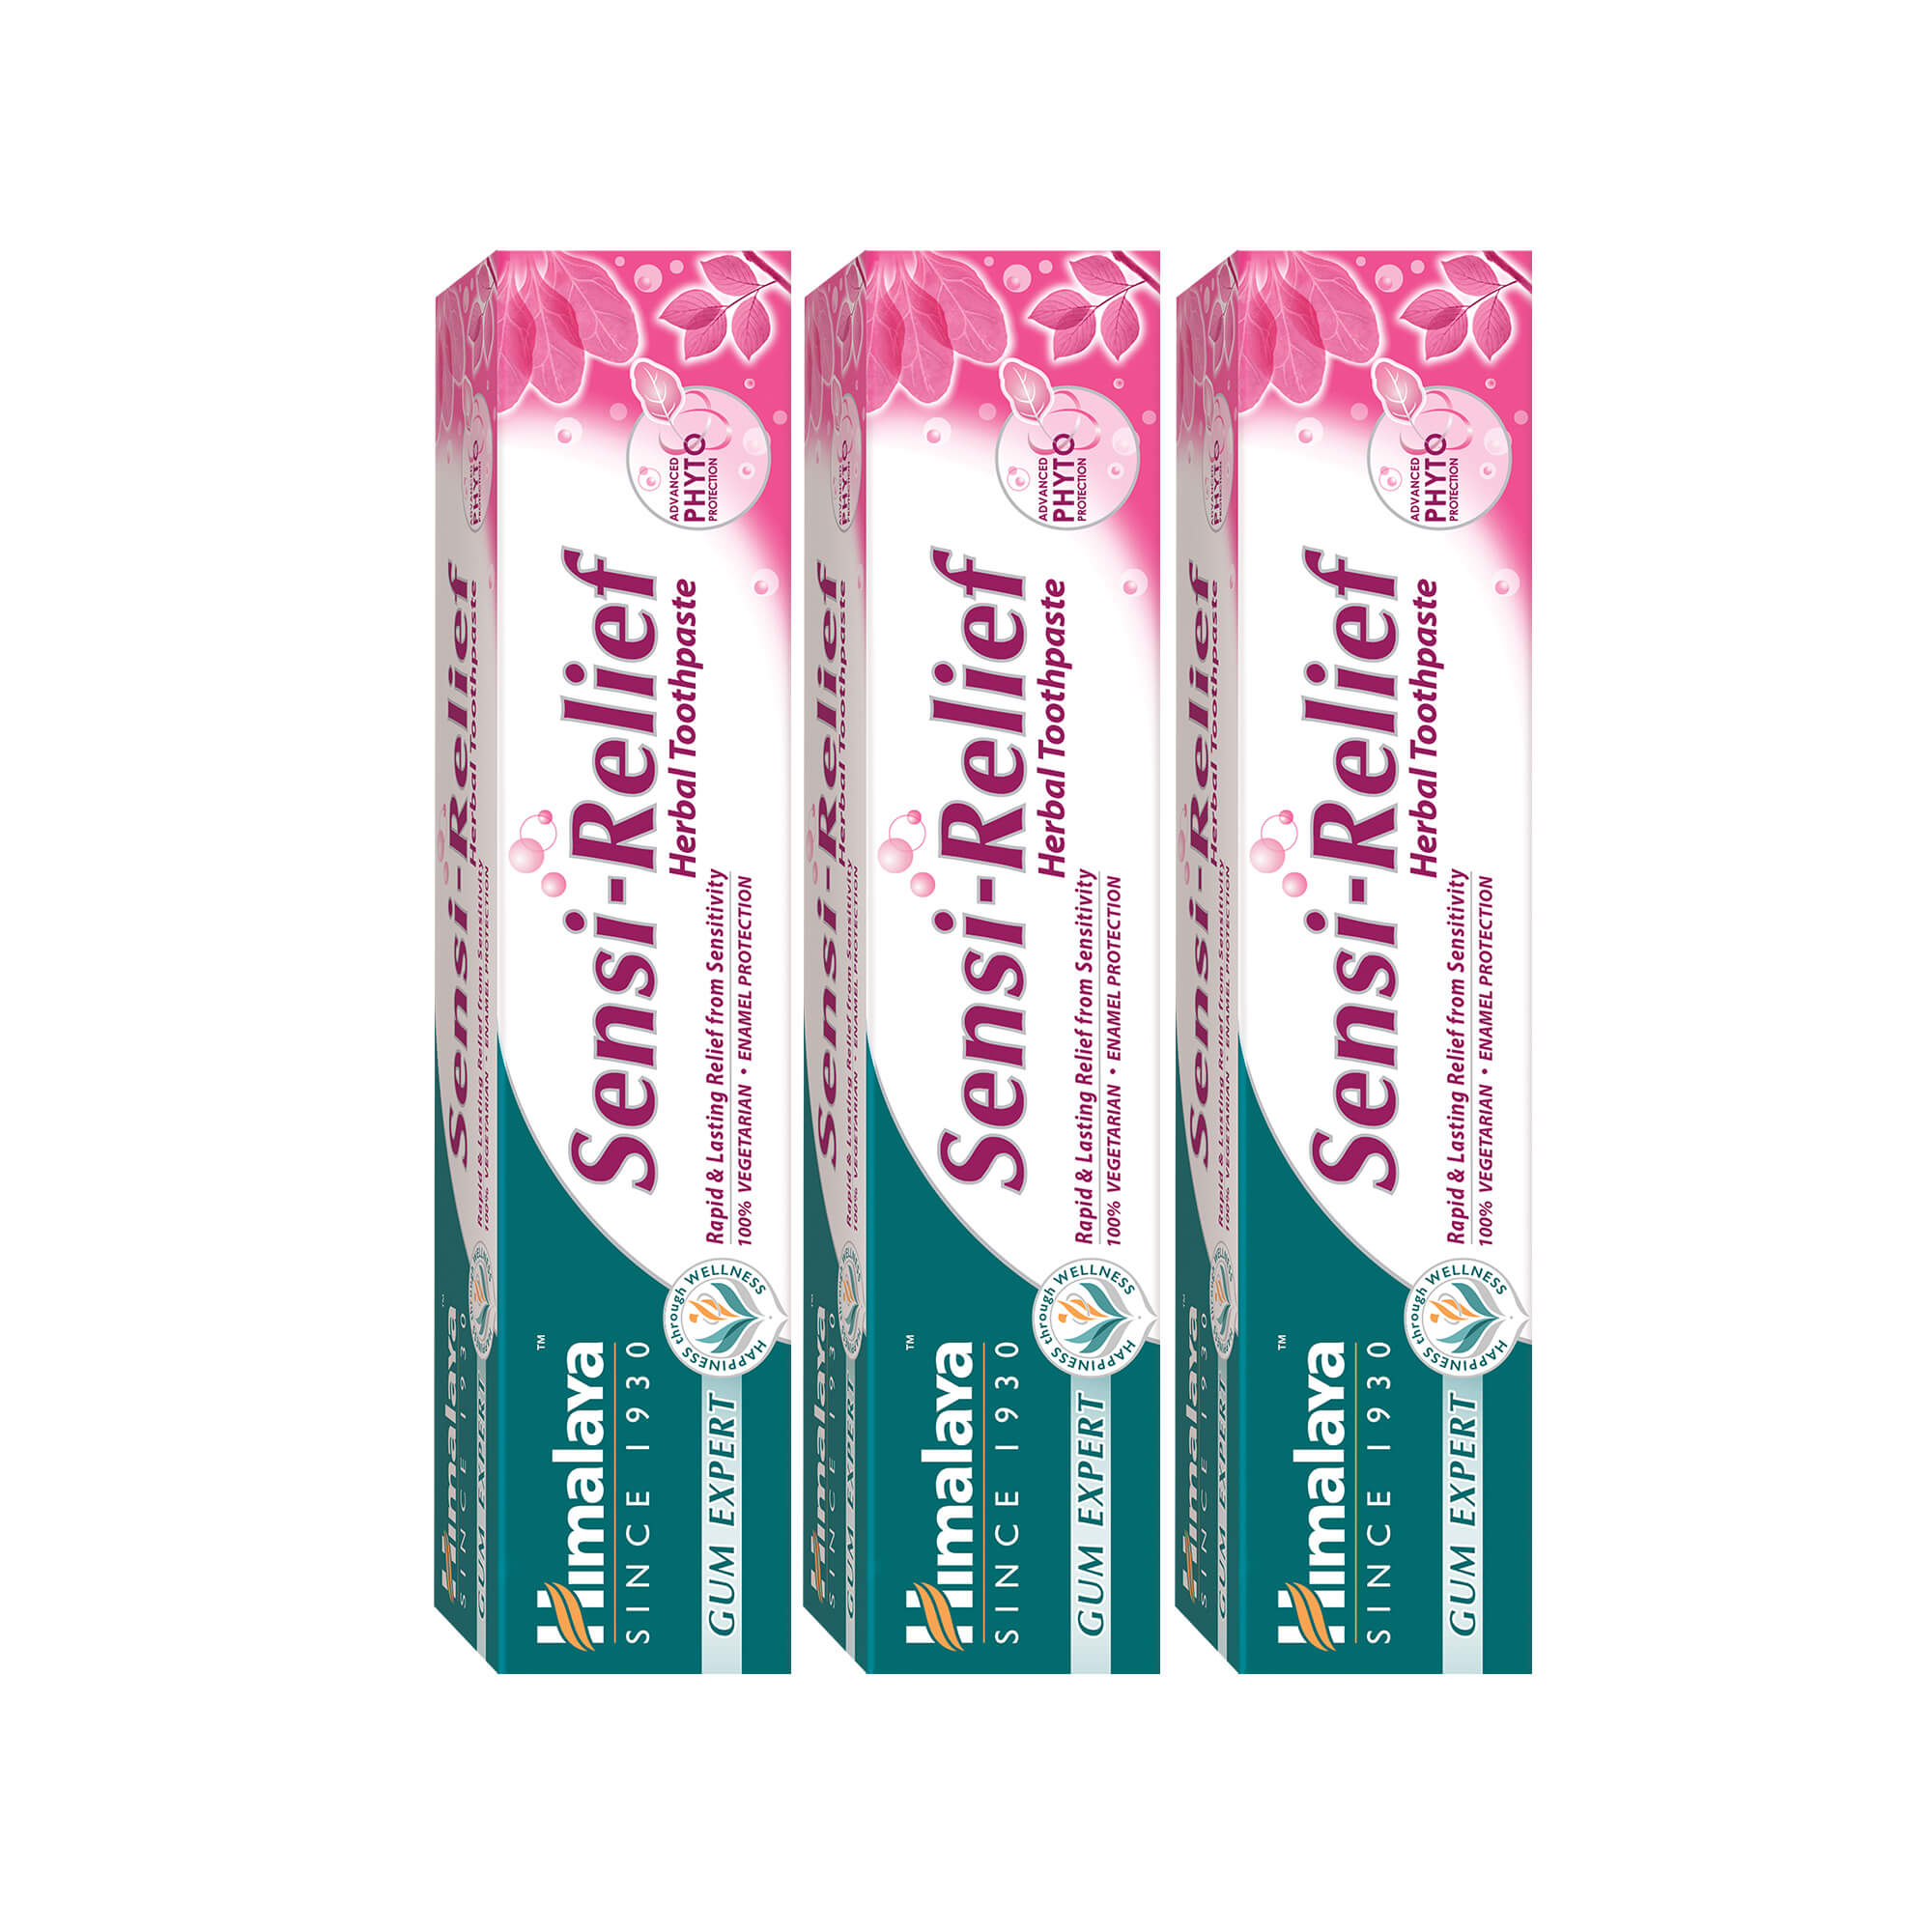 Himalaya Gum Expert Herbal Toothpaste - Sensi Relief - 75ml (Pack of 3)